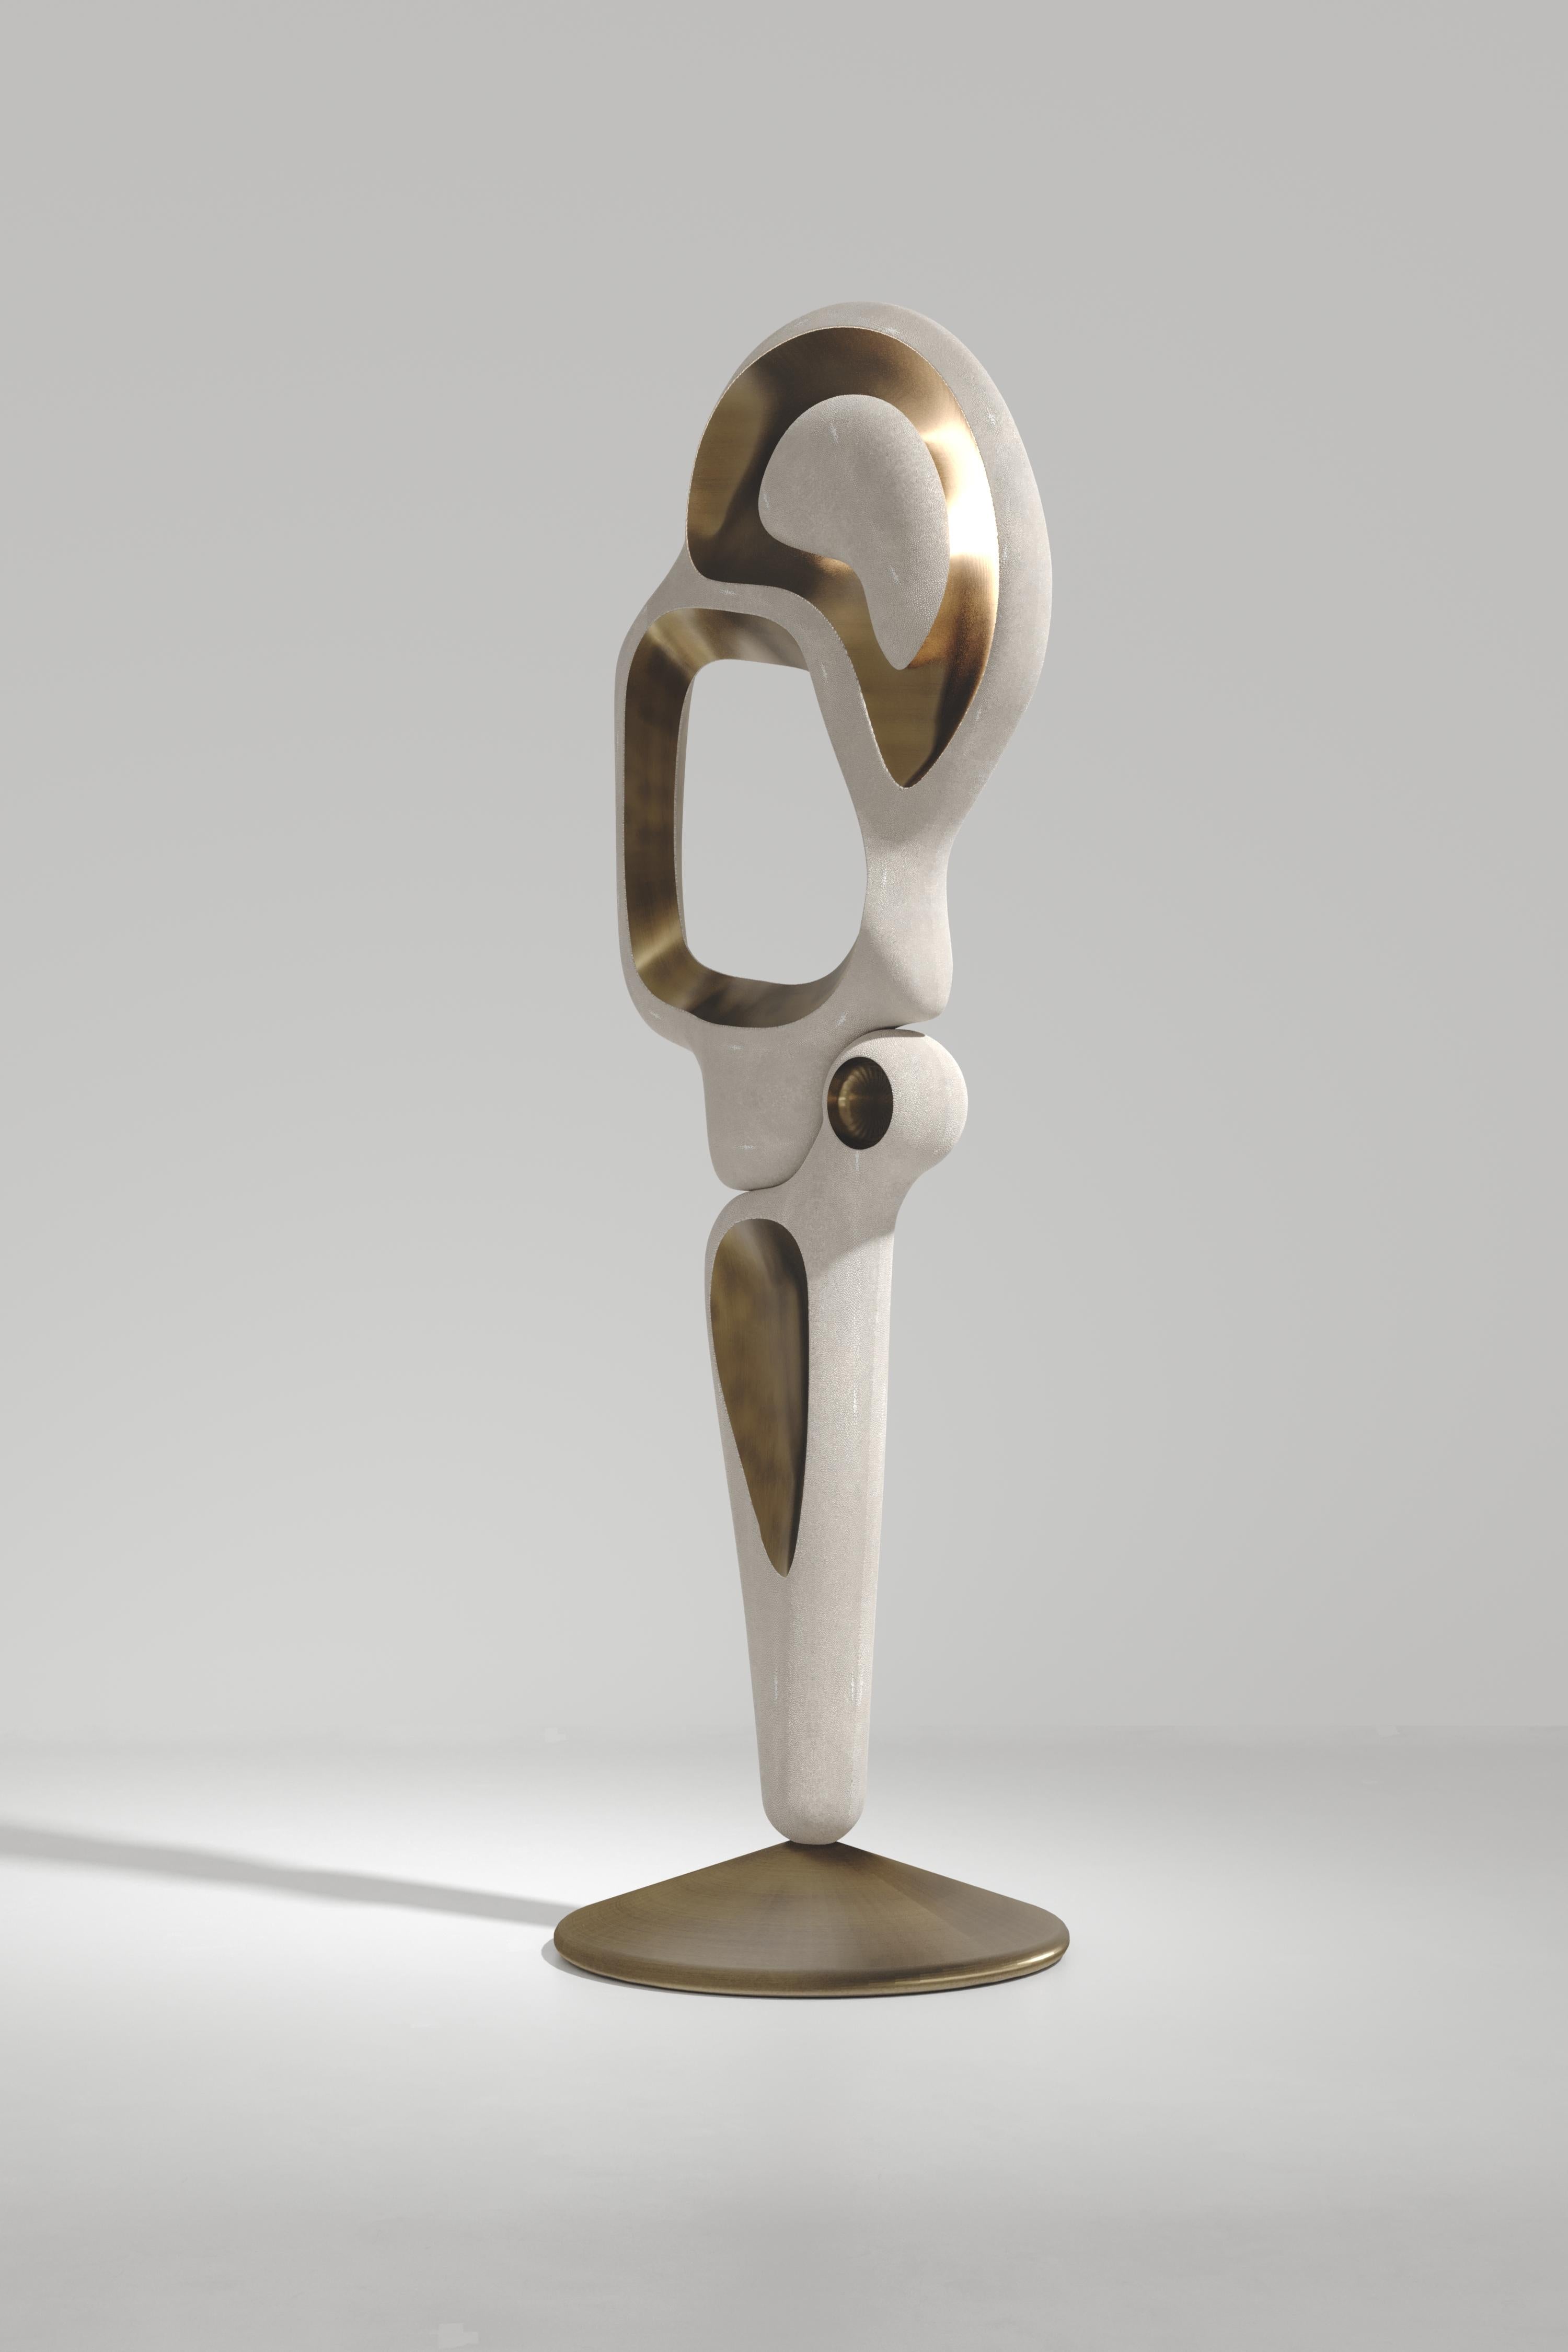 Le lampadaire Owl de R&Y Augousti est une pièce sculpturale à l'allure vintage-moderne. La pièce explore les courbes organiques bulbeuses et les découpes avec des détails subtils pour créer l'esthétique Augousti. Les parties suspendues qui